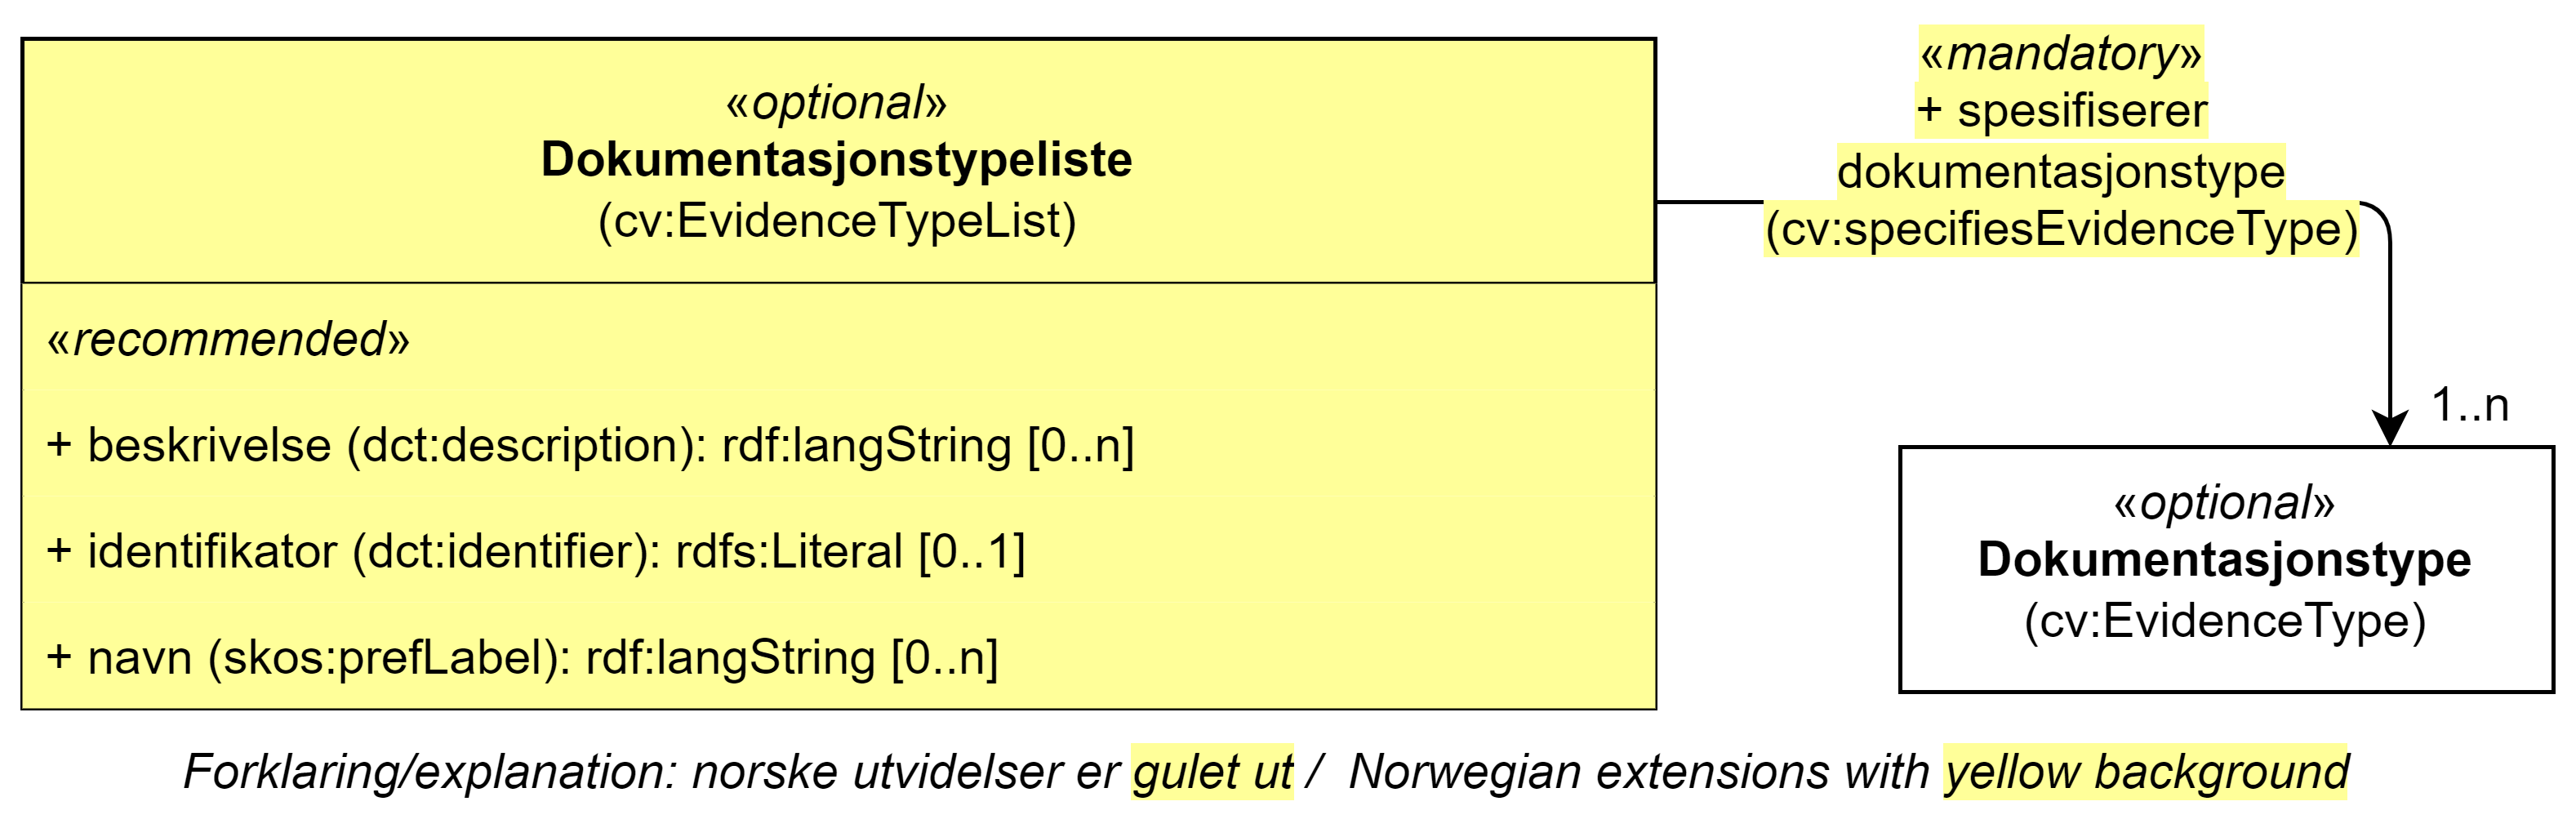 UML-diagram med klassen Dokumentasjonstypeliste, dens egenskaper og dens relasjon til en annen klasse. Norske utvidelser er gulet ut. Innholdet i diagrammet er forklart i teksten.